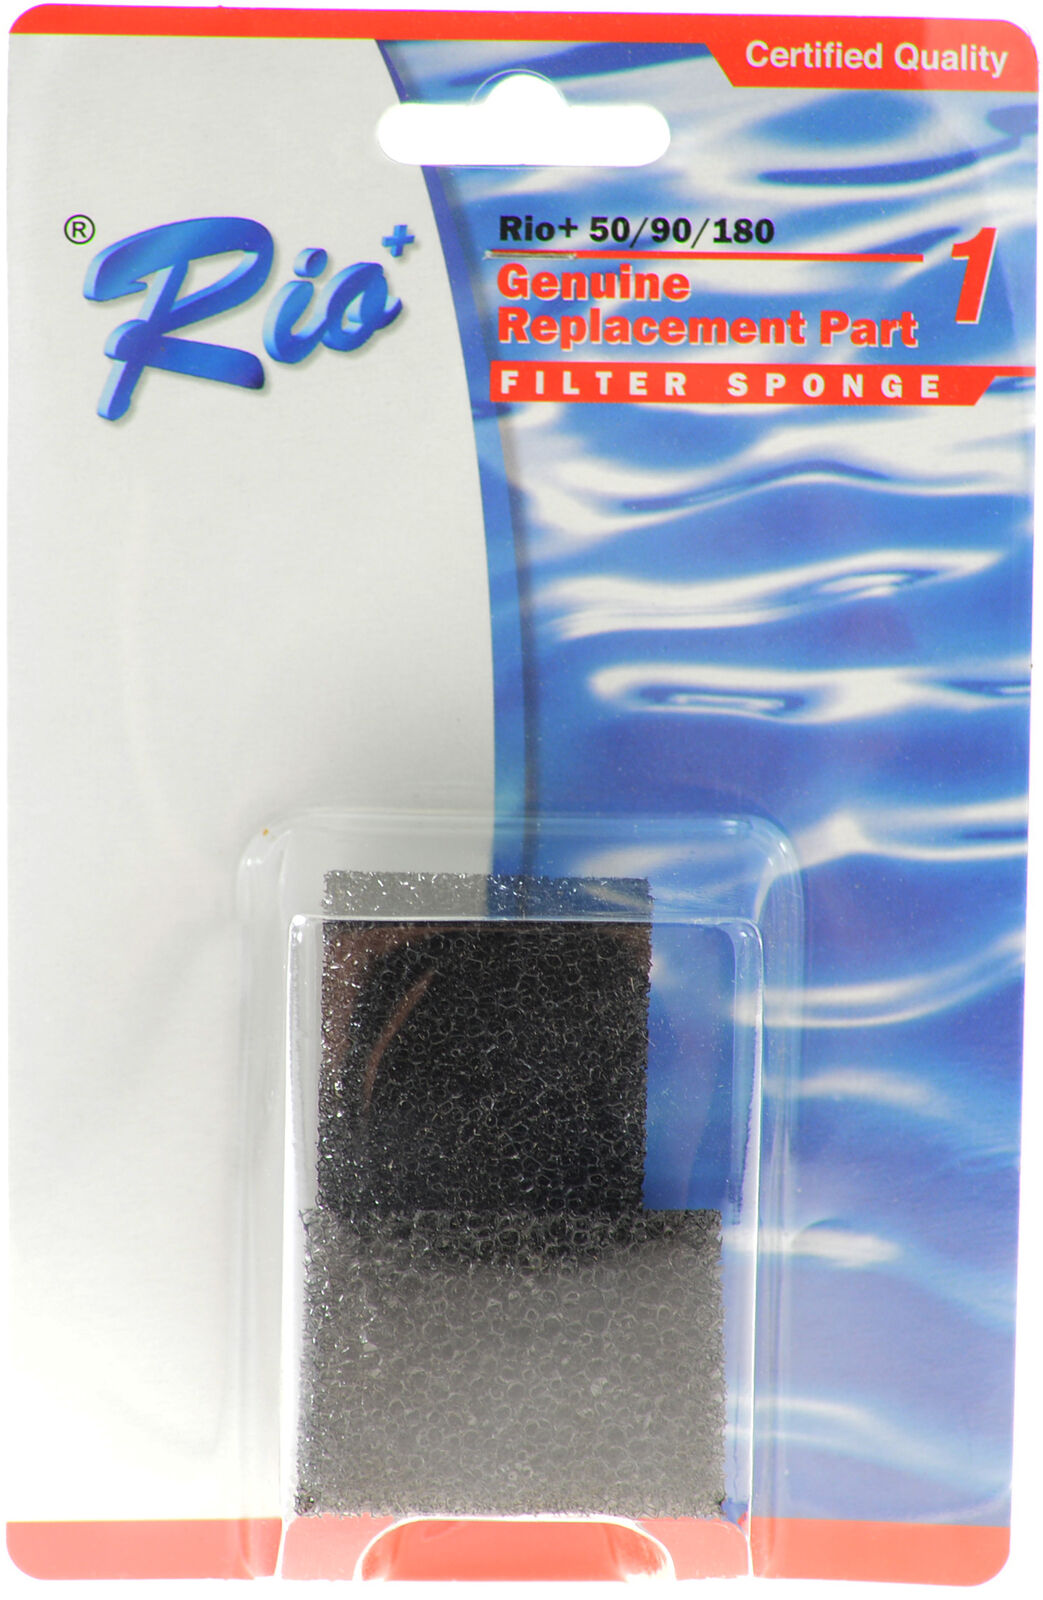 Rio Plus Aqua Pump Replacement Filter Sponge